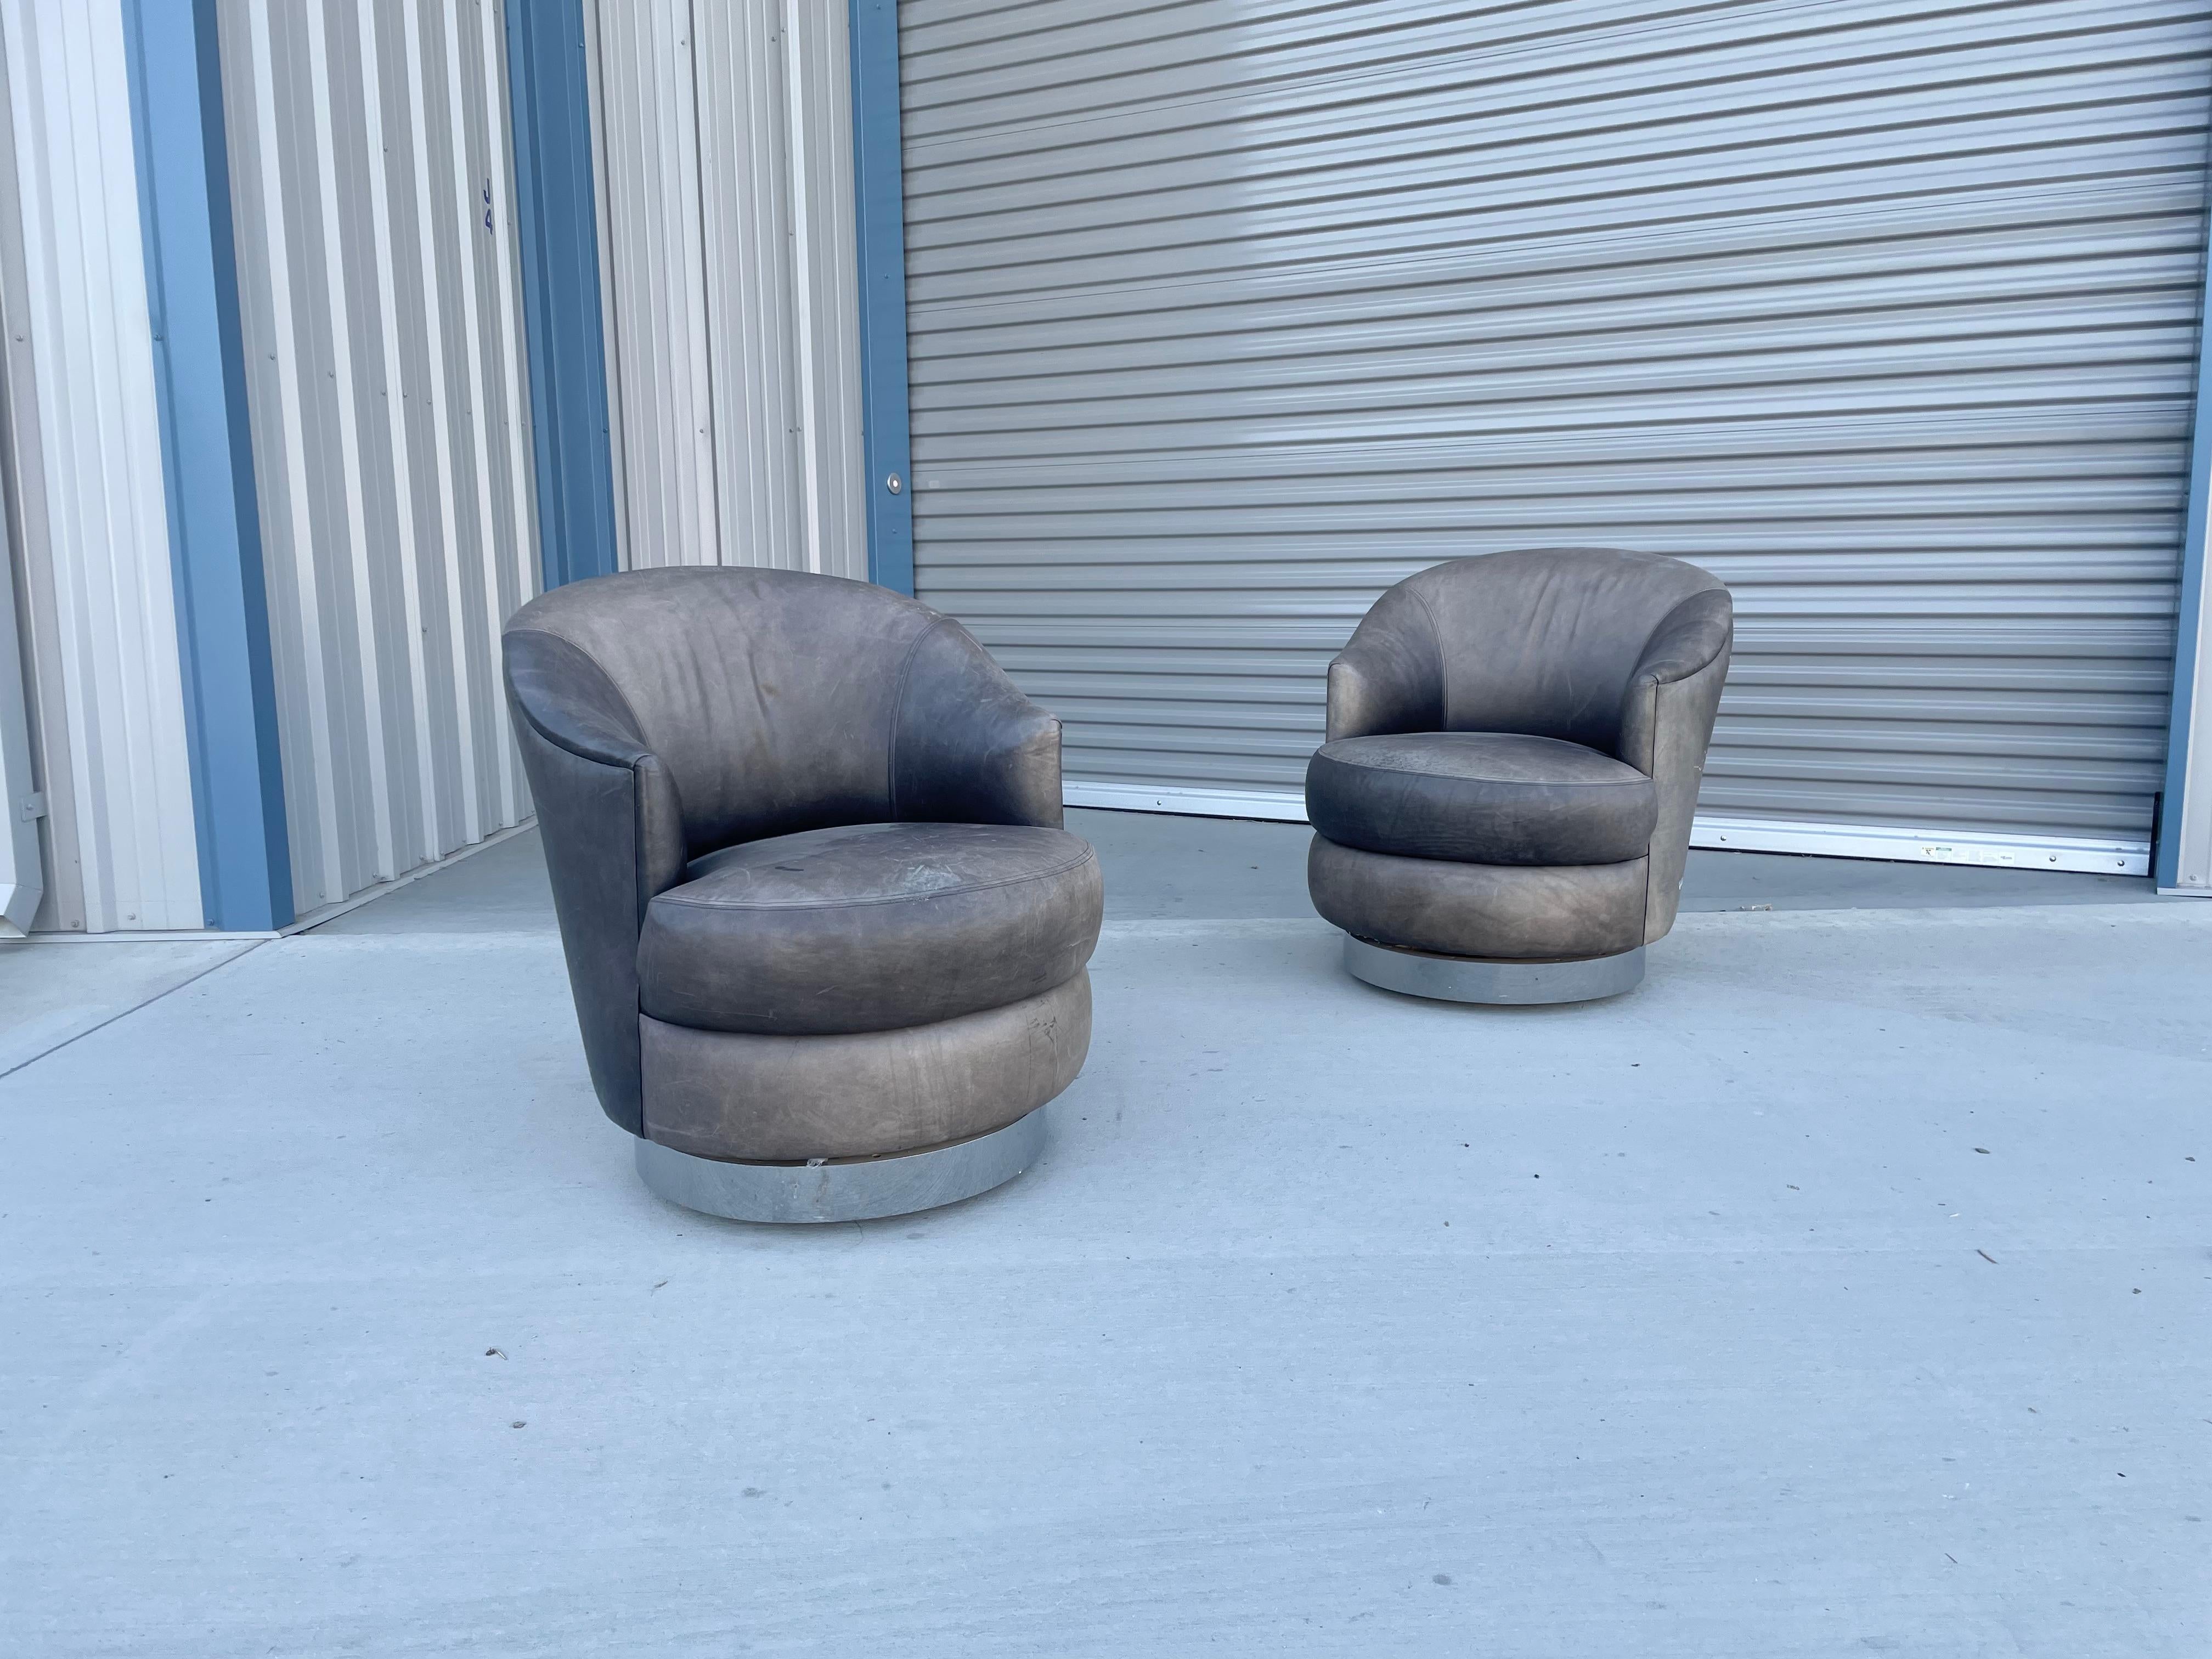 Belle paire de fauteuils pivotants vintage en cuir chromé conçus par Sally Sirkin Lewis pour J Robert Scott & Associates aux États-Unis, vers les années 1980. Ces chaises sont recouvertes de cuir et reposent sur une base chromée pivotante à 360